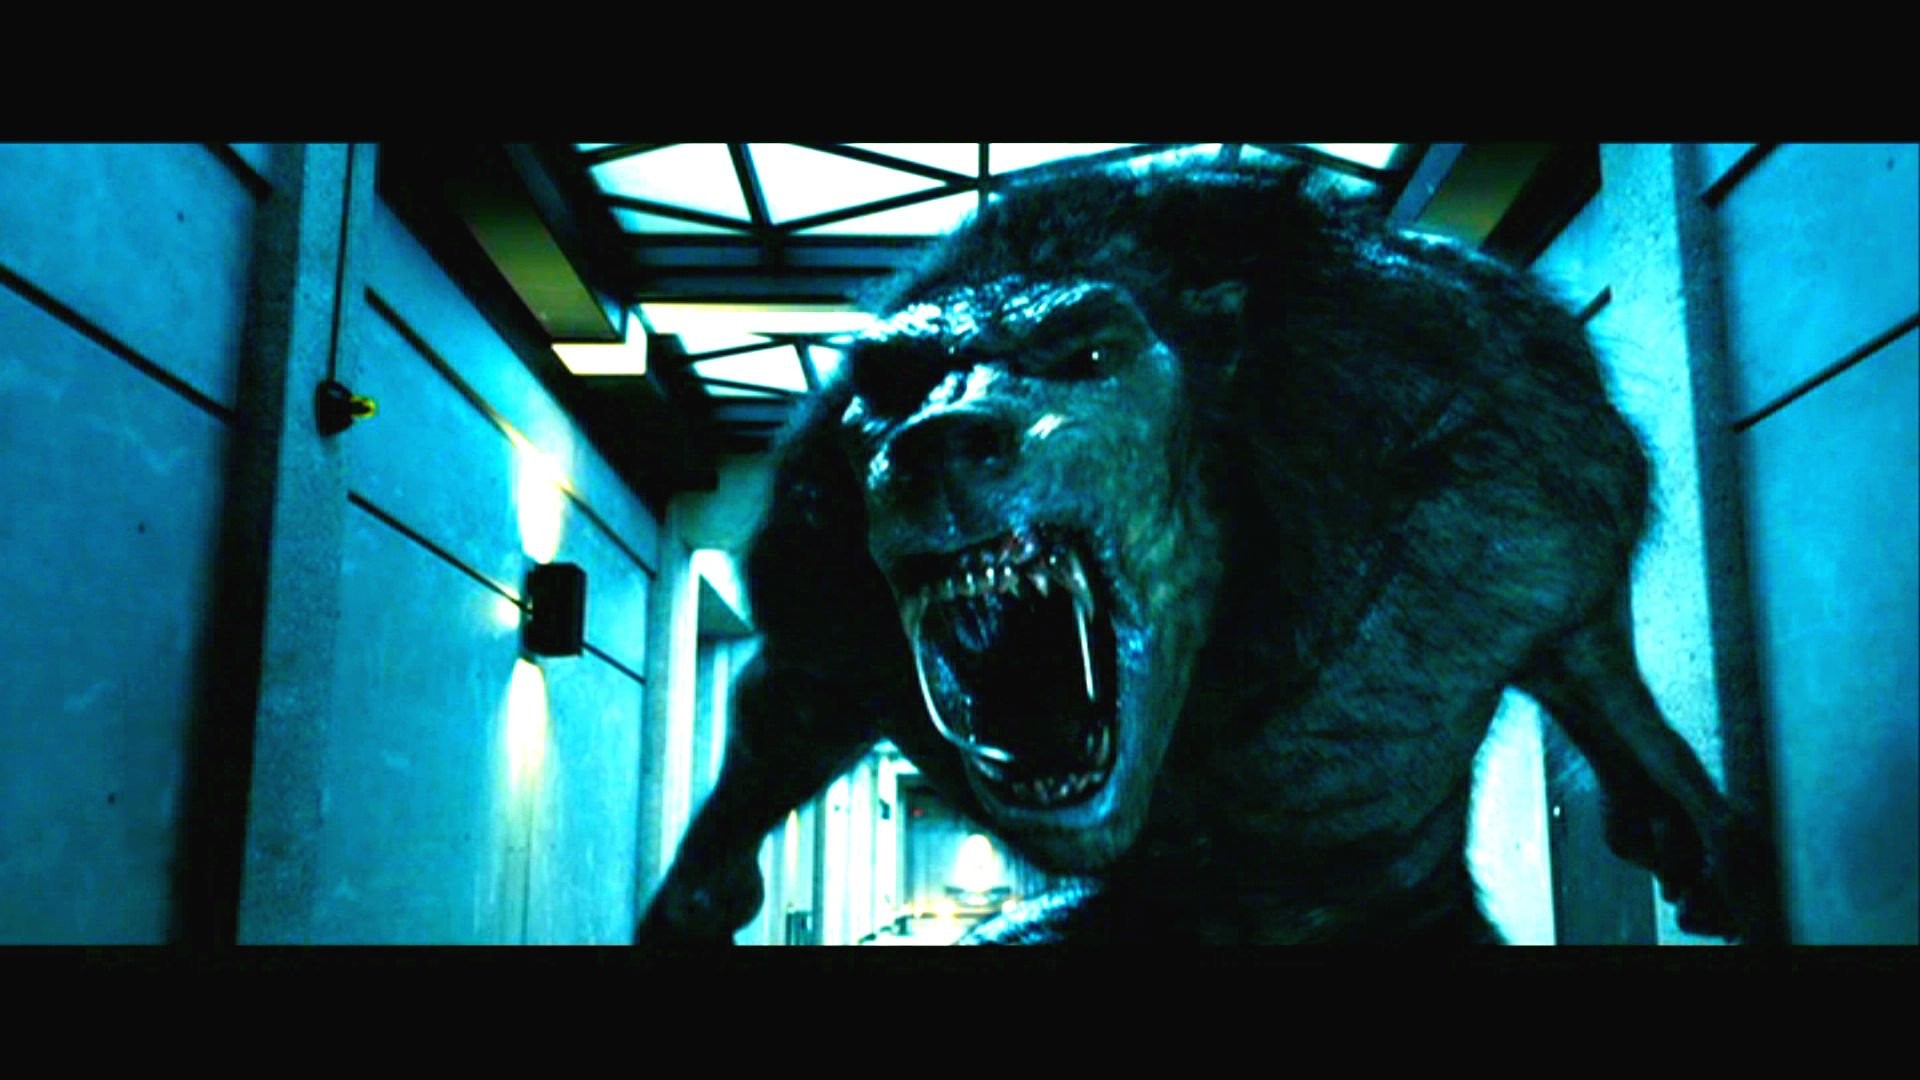 1920x1080 UNDERWORLD action fantasy thriller dark lycan werewolf gd wallpaper |   | 235421 | WallpaperUP